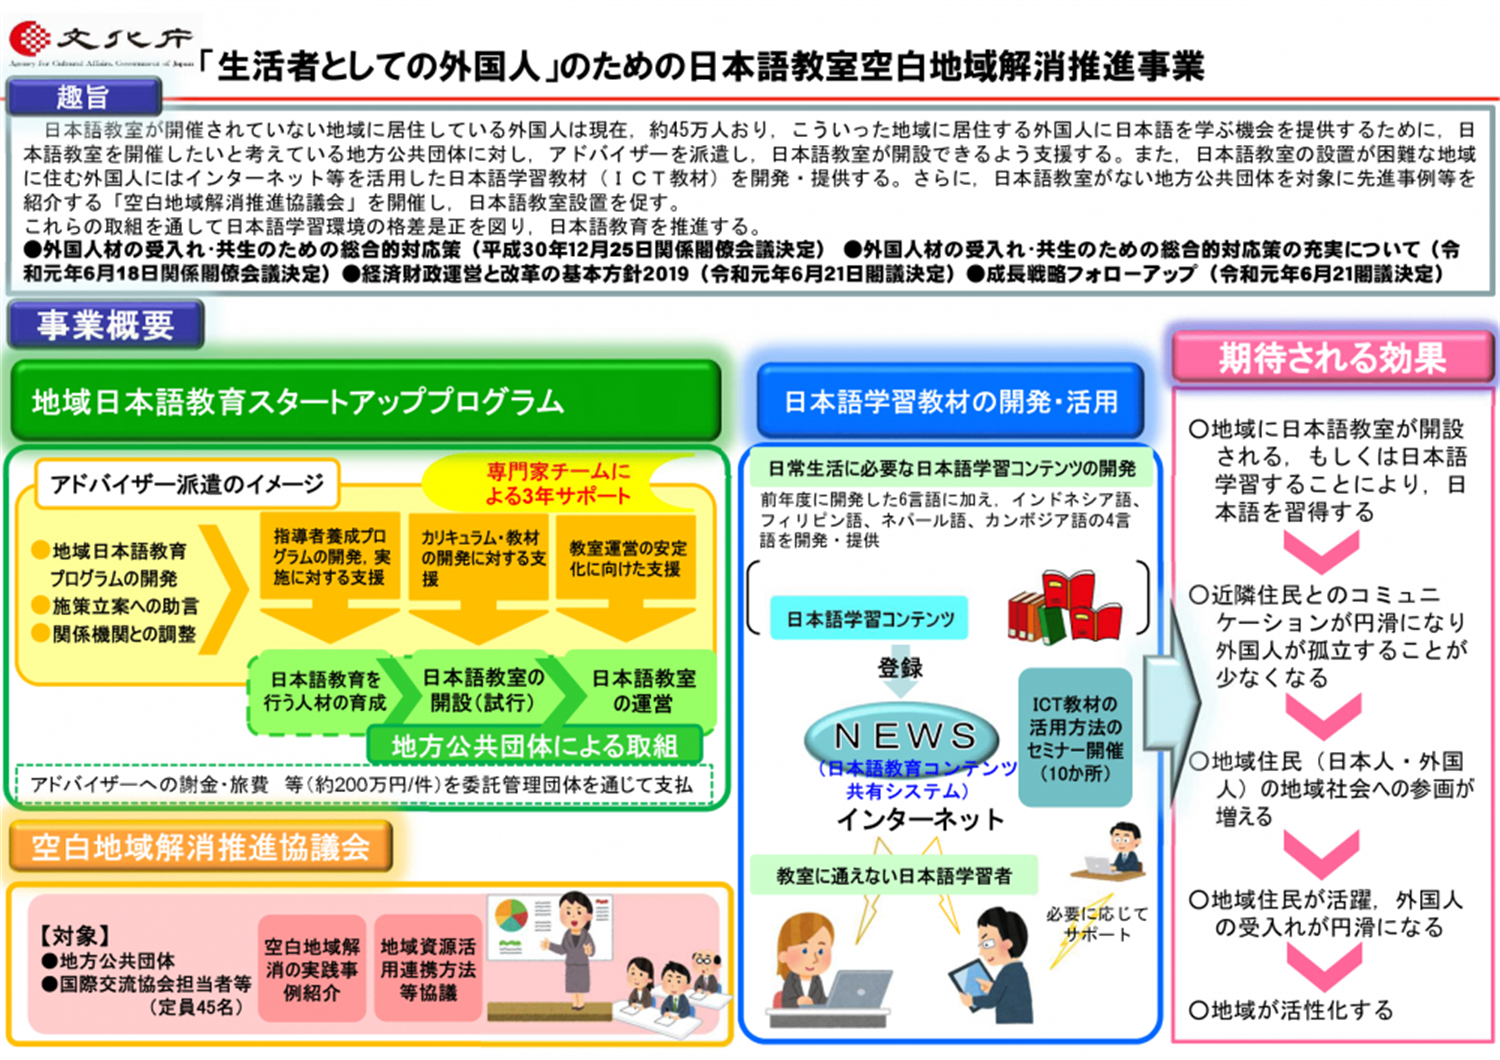 日本語学習サイト『つながるひろがる にほんごでのくらし』